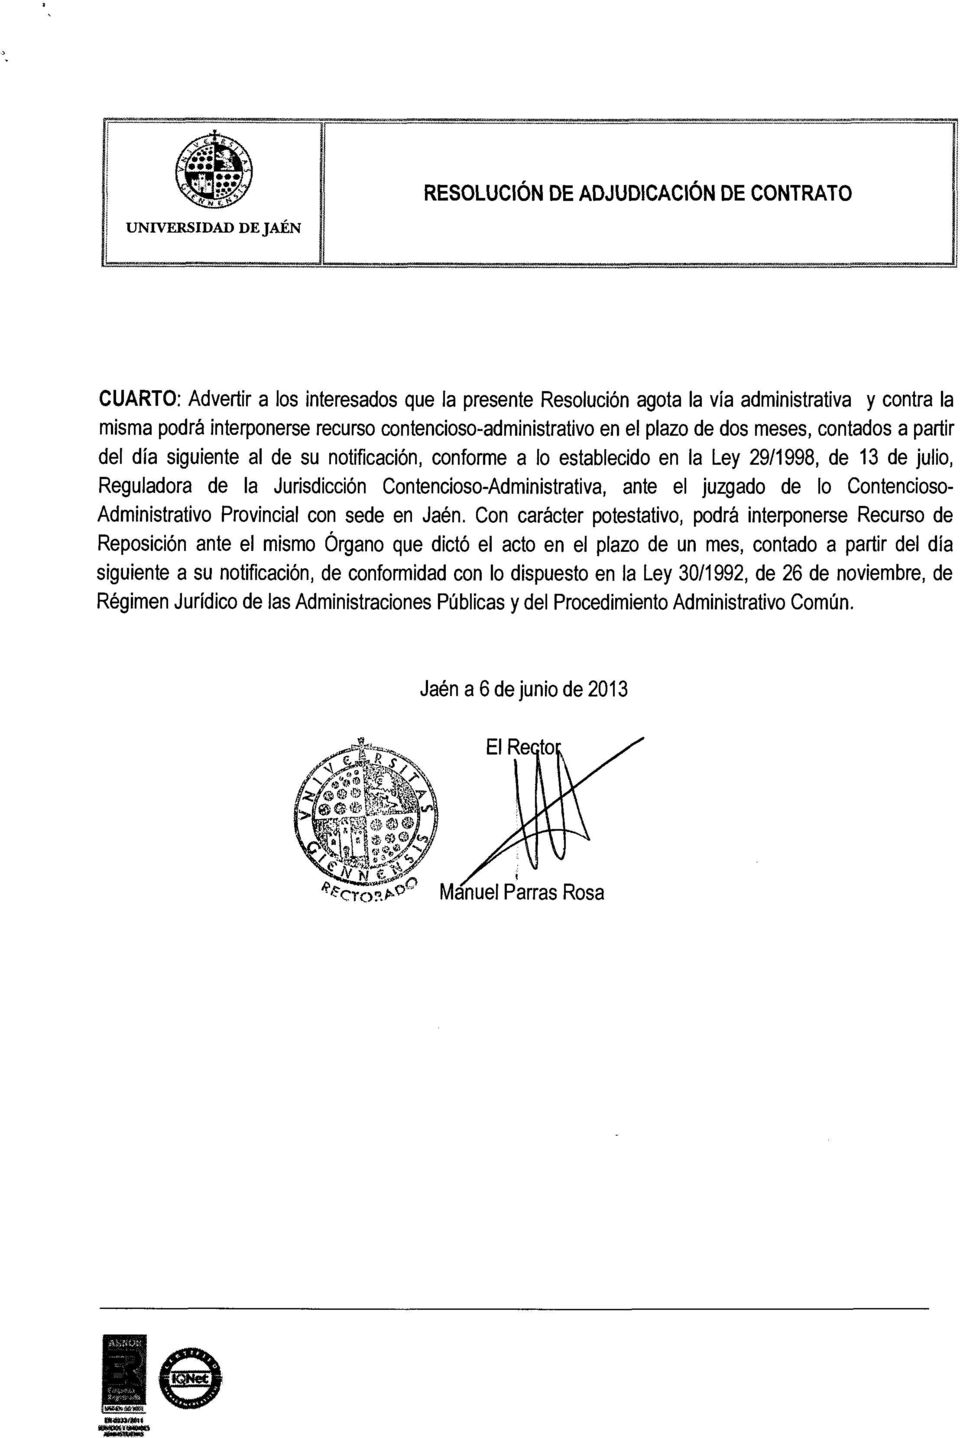 Jurisdicción Contencioso-Administrativa, ante el juzgado de lo Contencioso Administrativo Provincial con sede en Jaén.